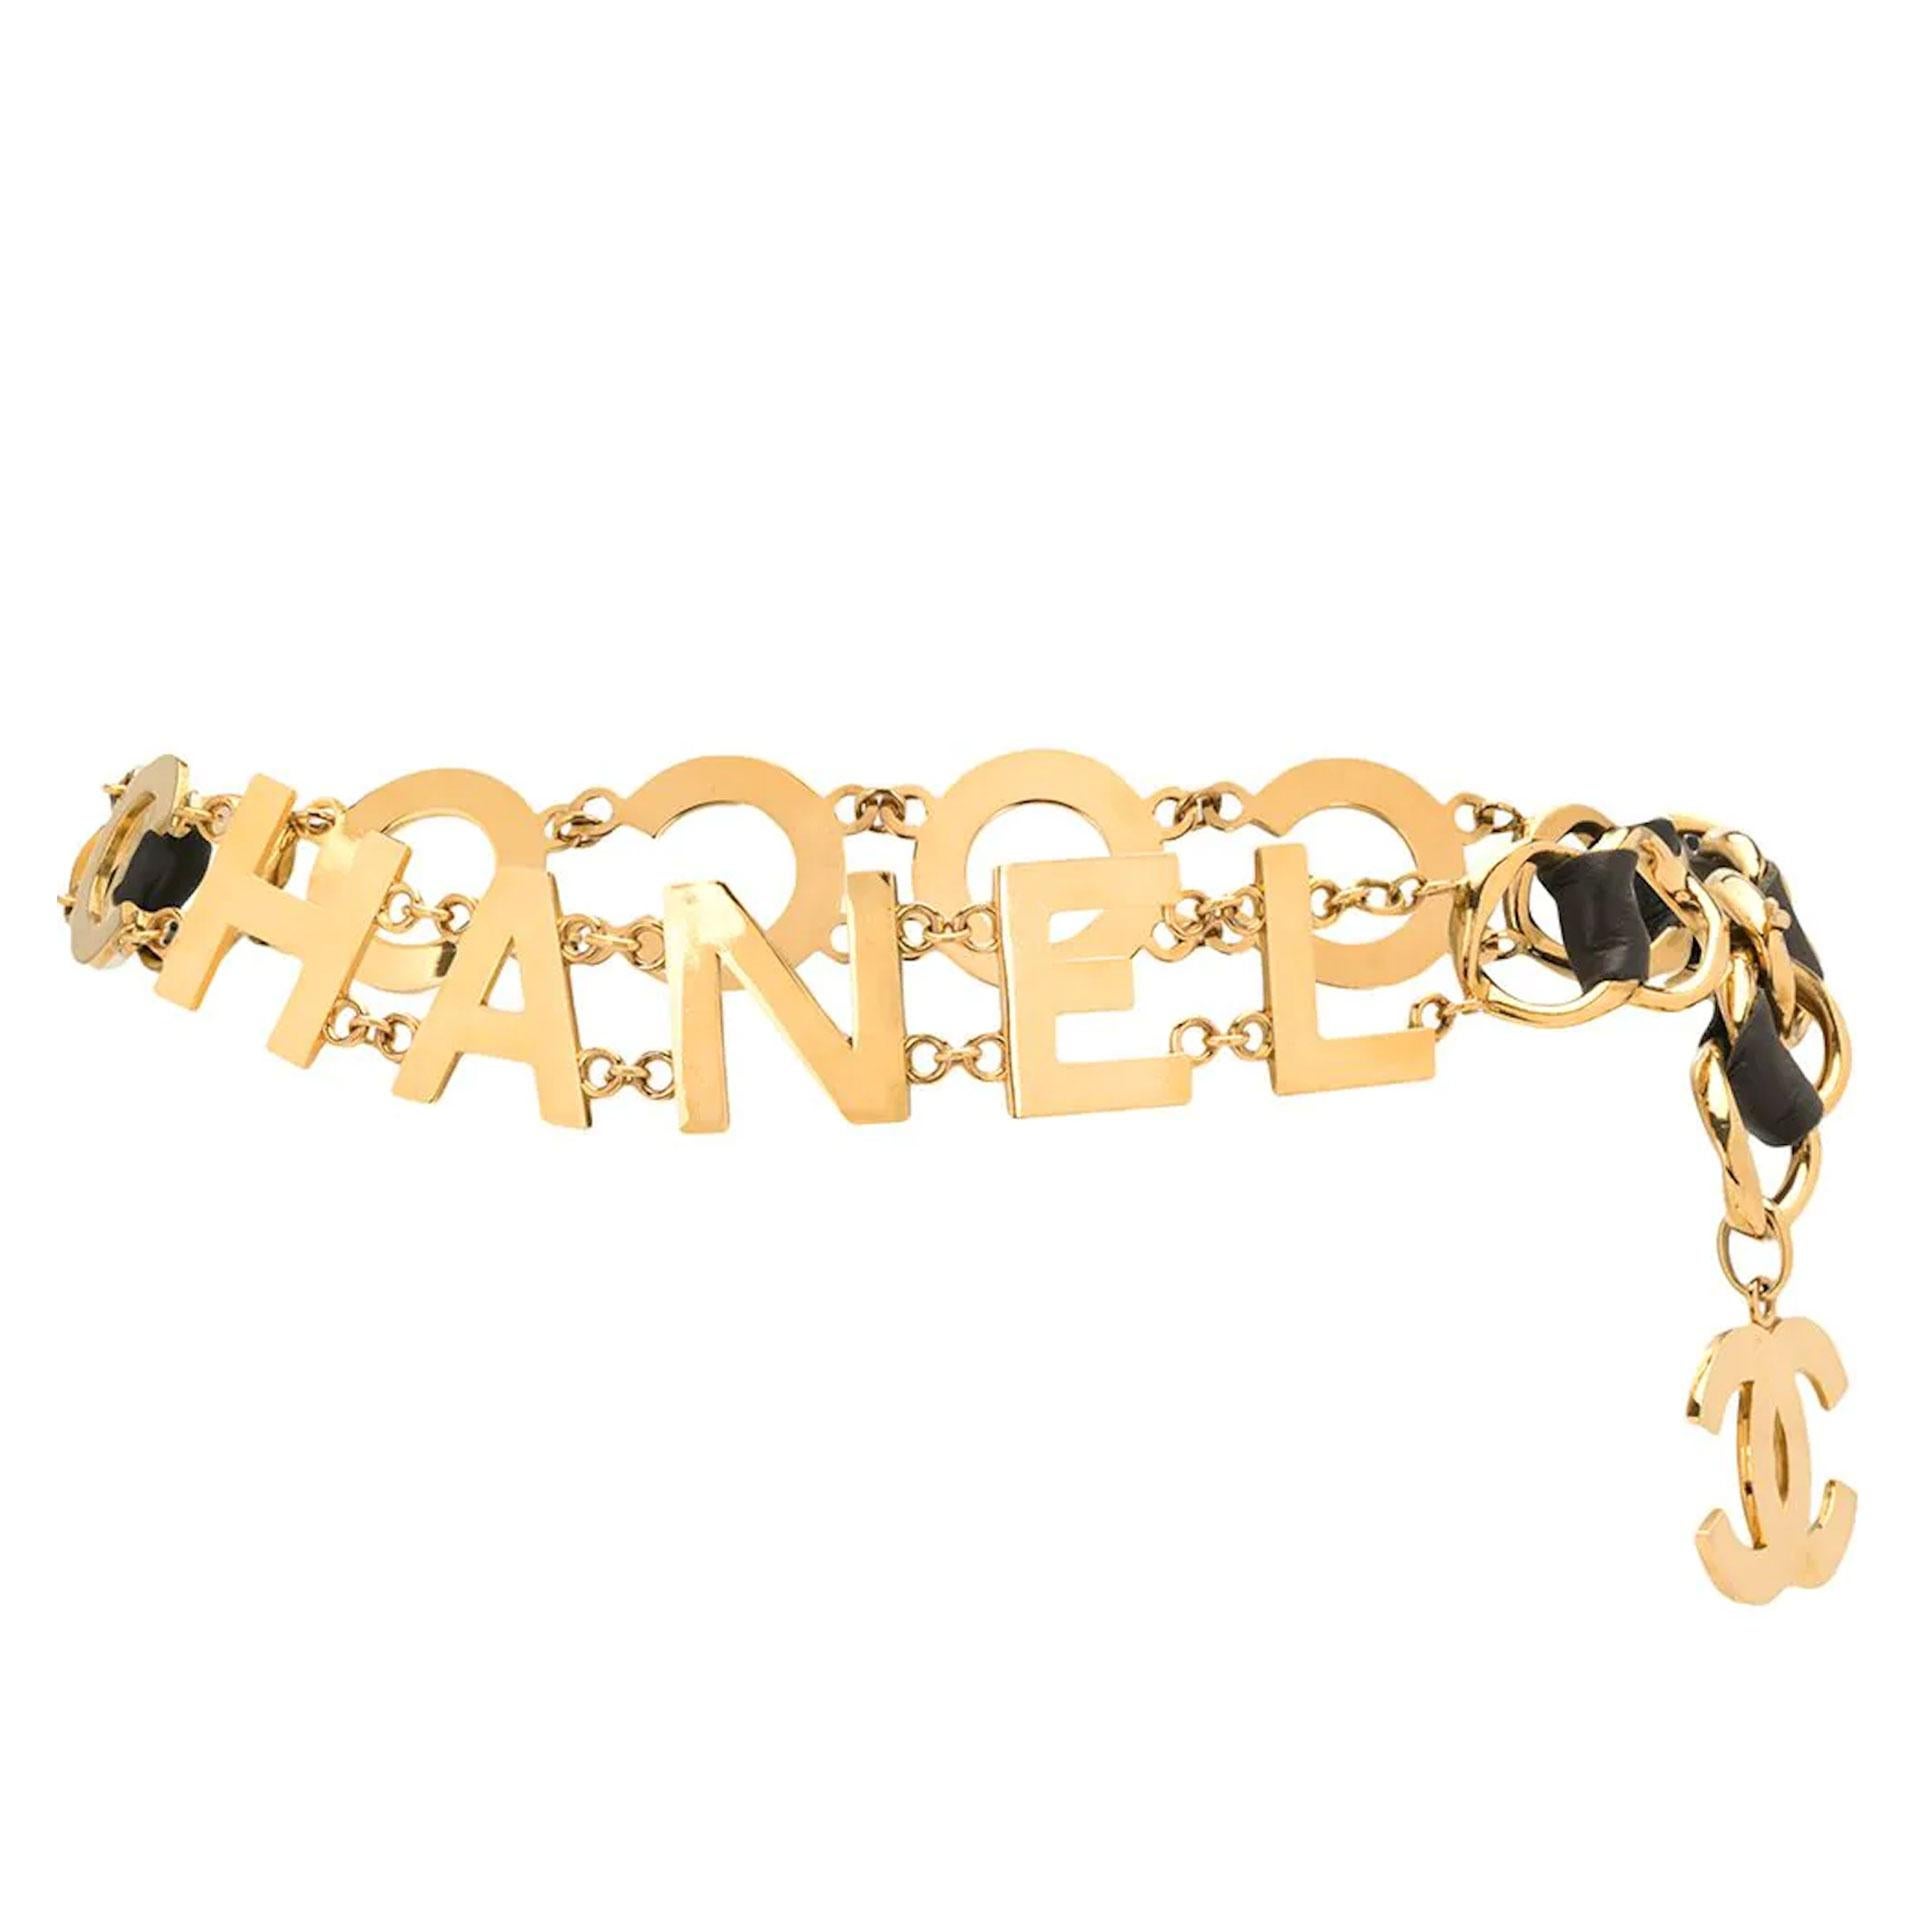 Chanel Vintage 90's Runway Collector COCO CHANEL Gold Letters Belt Necklace Rare

Vintage Chanel Gürtel von 1993 in Gold mit schwarzem Leder verflochten. Der Gürtel trägt den Schriftzug 